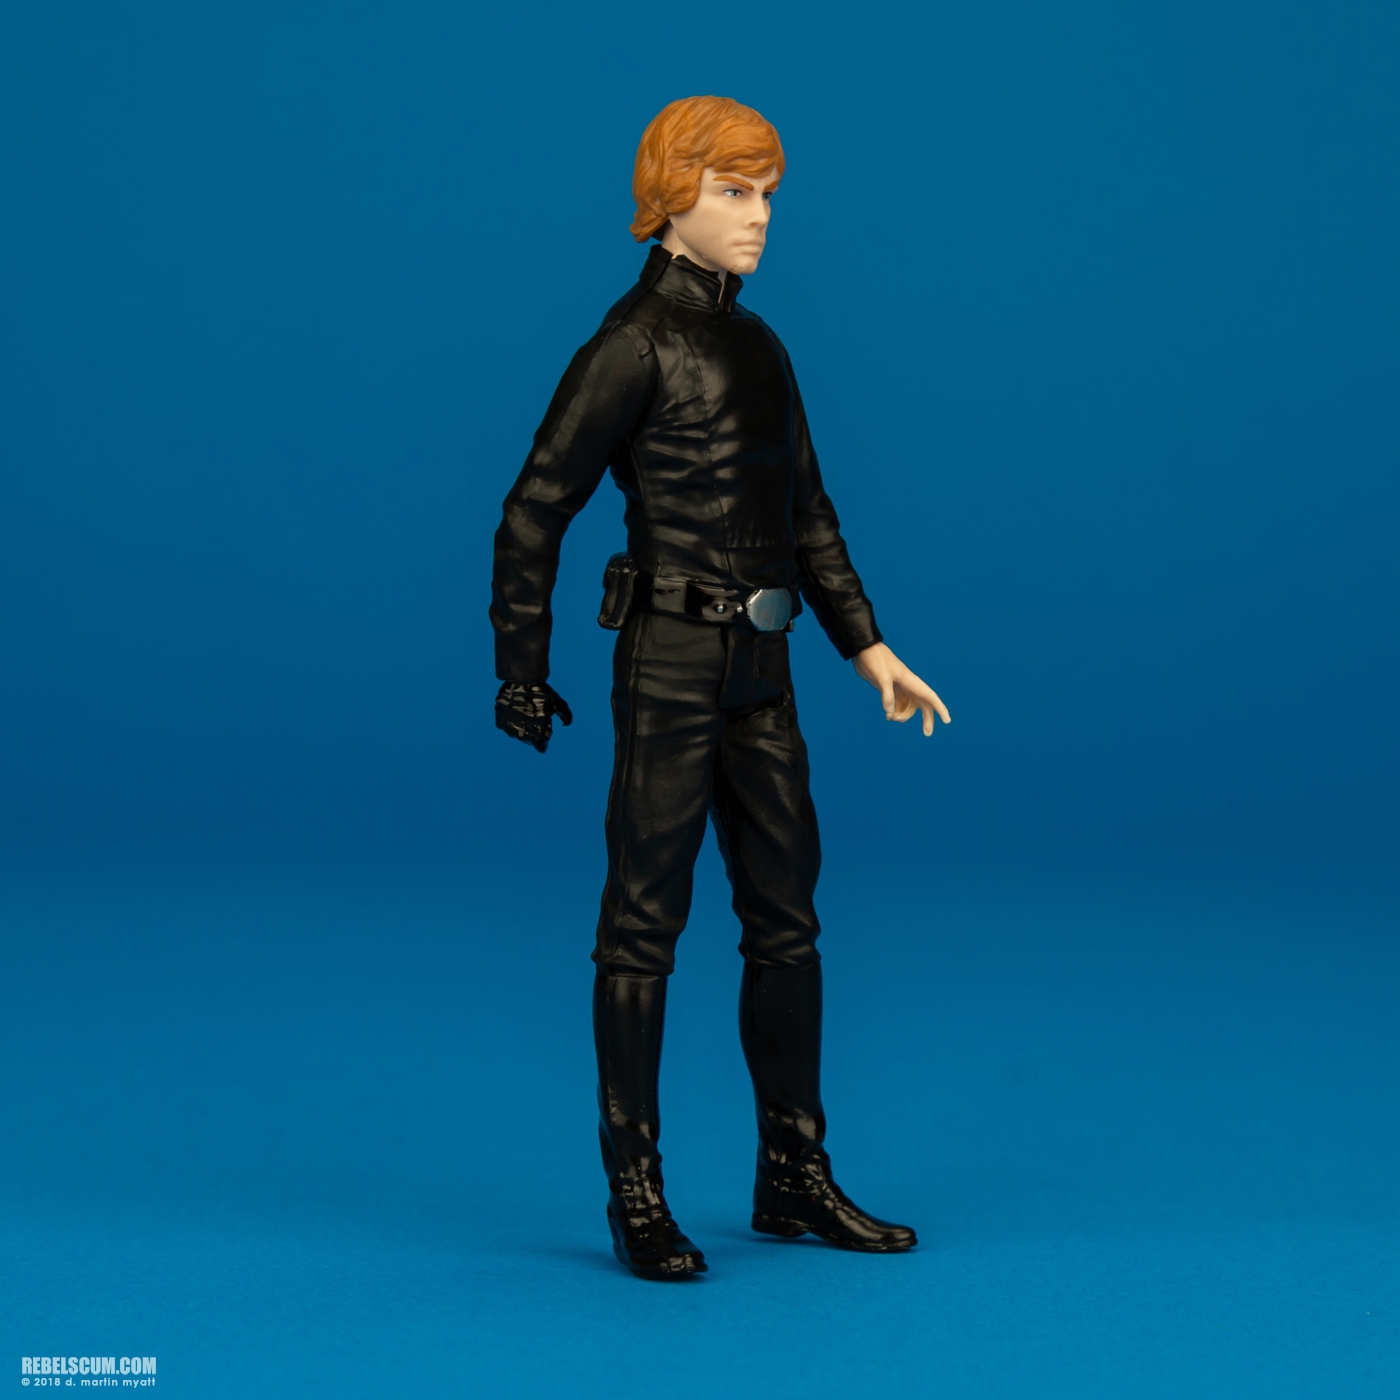 Luke-Skywalker-ROTJ-Solo-Force-Link-Hasbro-002.jpg